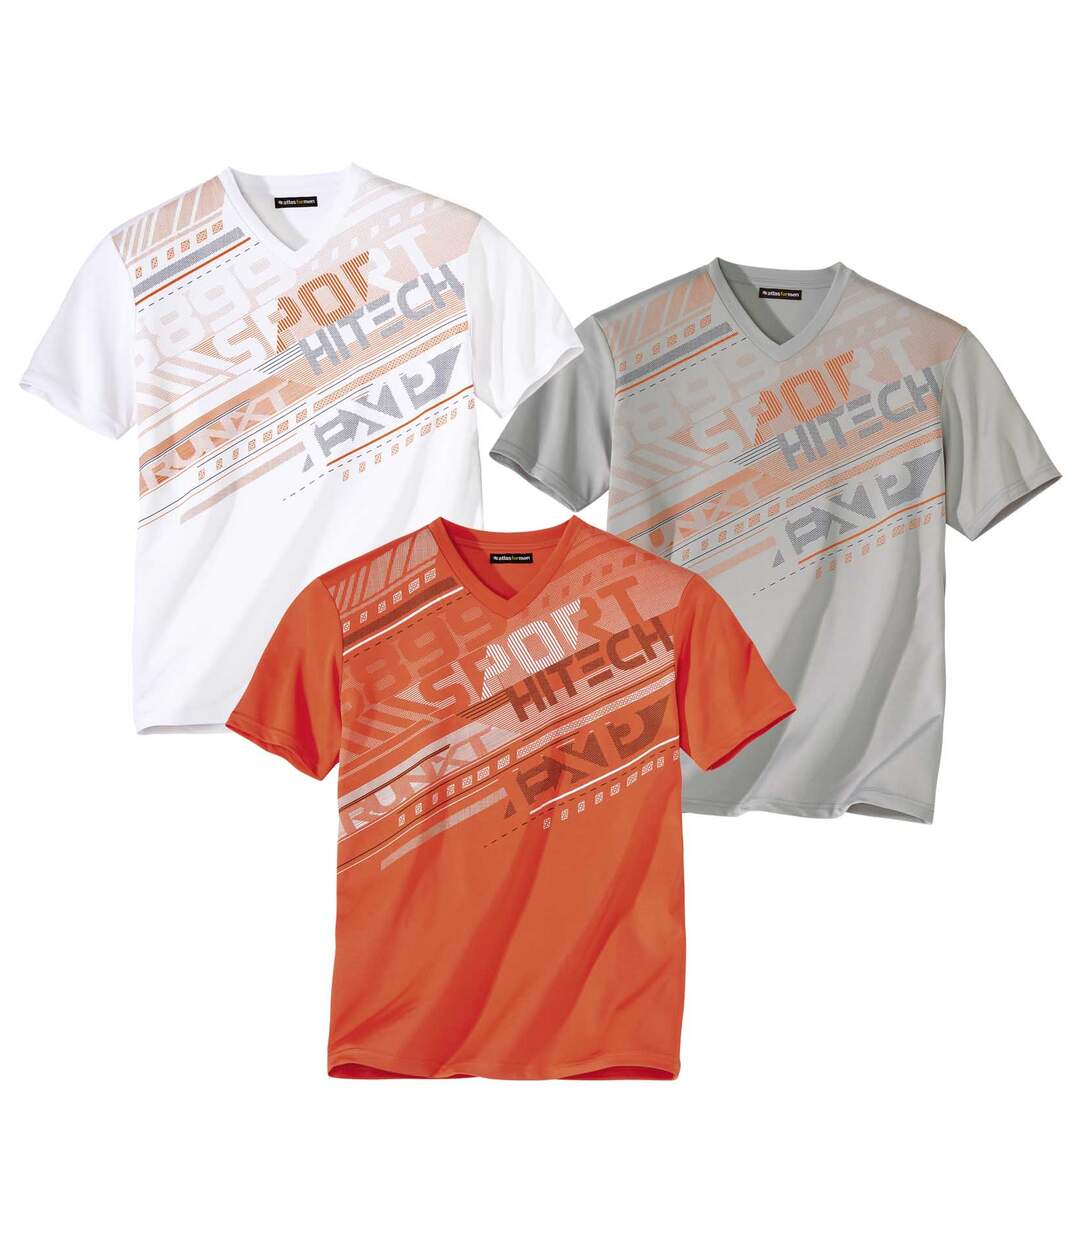 Pack of 3 Men's Graphic Print V-Neck T-Shirts - Grey White Orange Atlas For Men